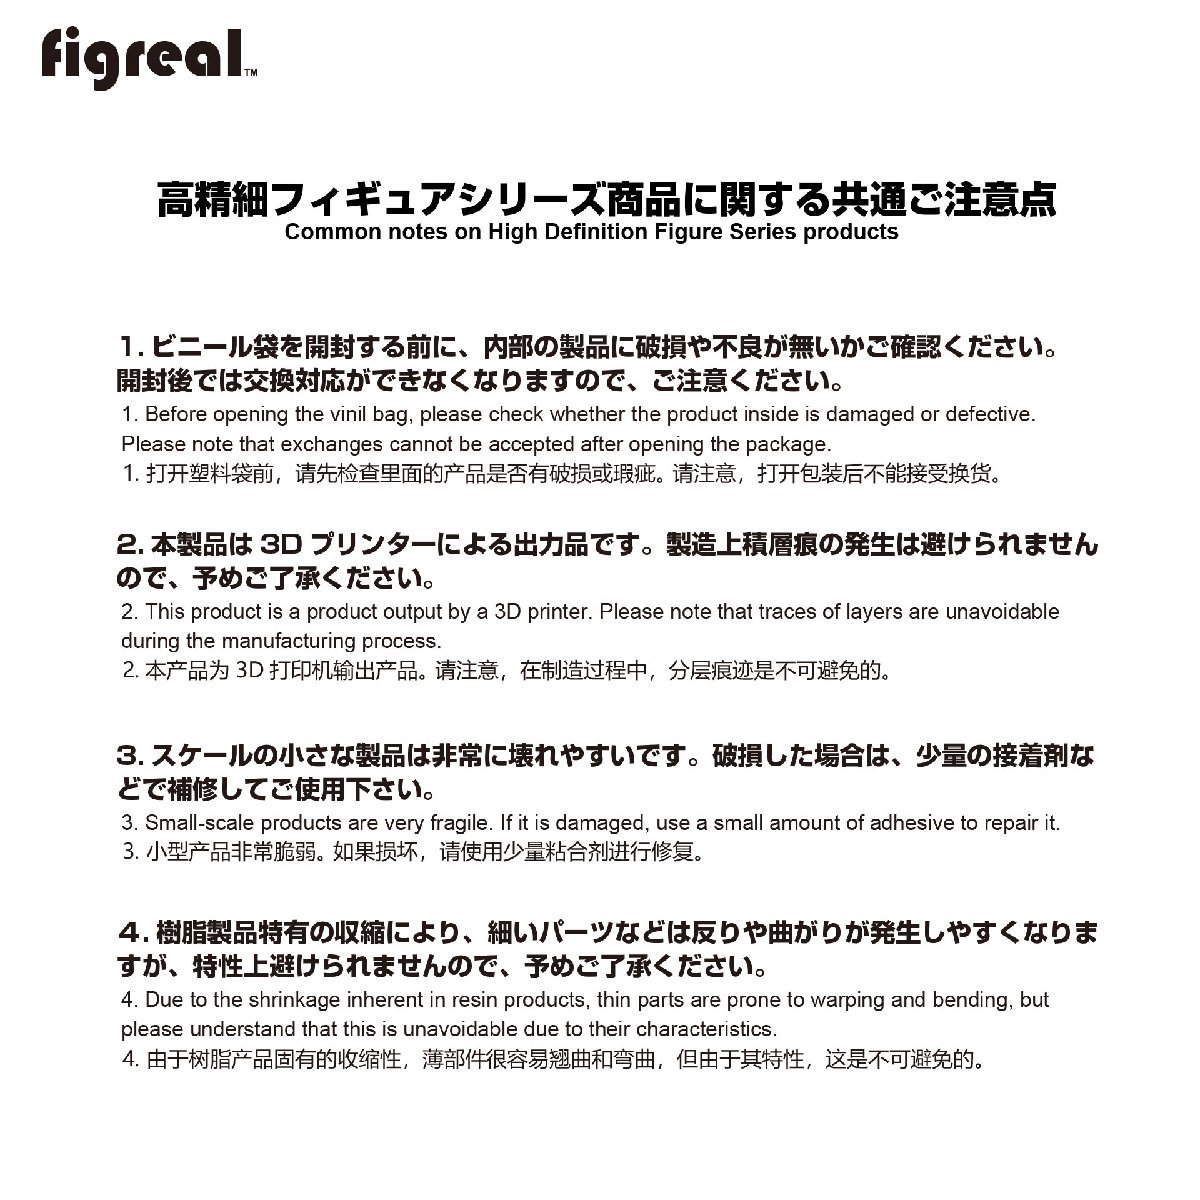 HS064-00013 figreal 日本白バイ隊員 1/64 高精細フィギュア_画像9